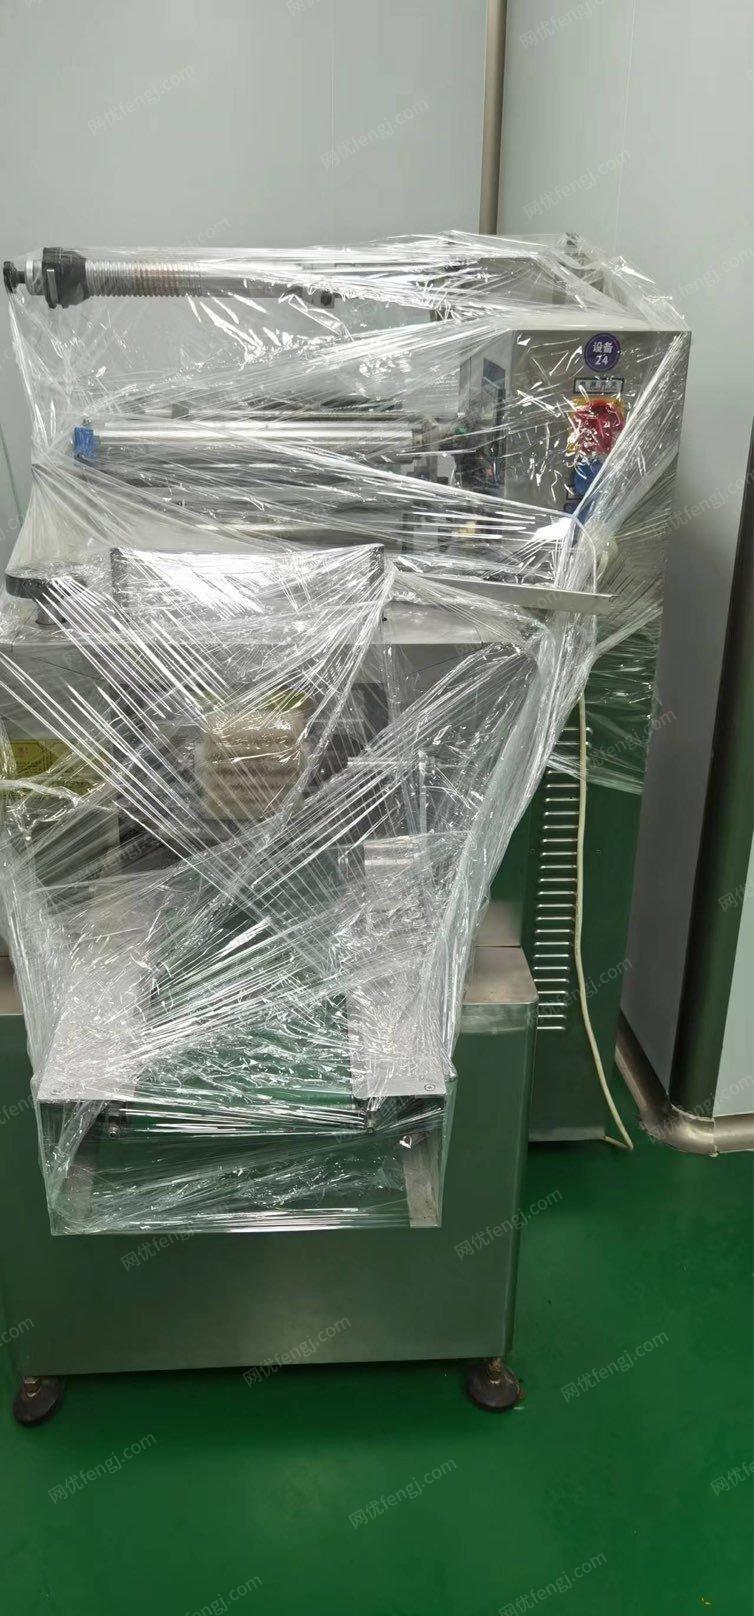 天津东丽区枕式包装机低价出售